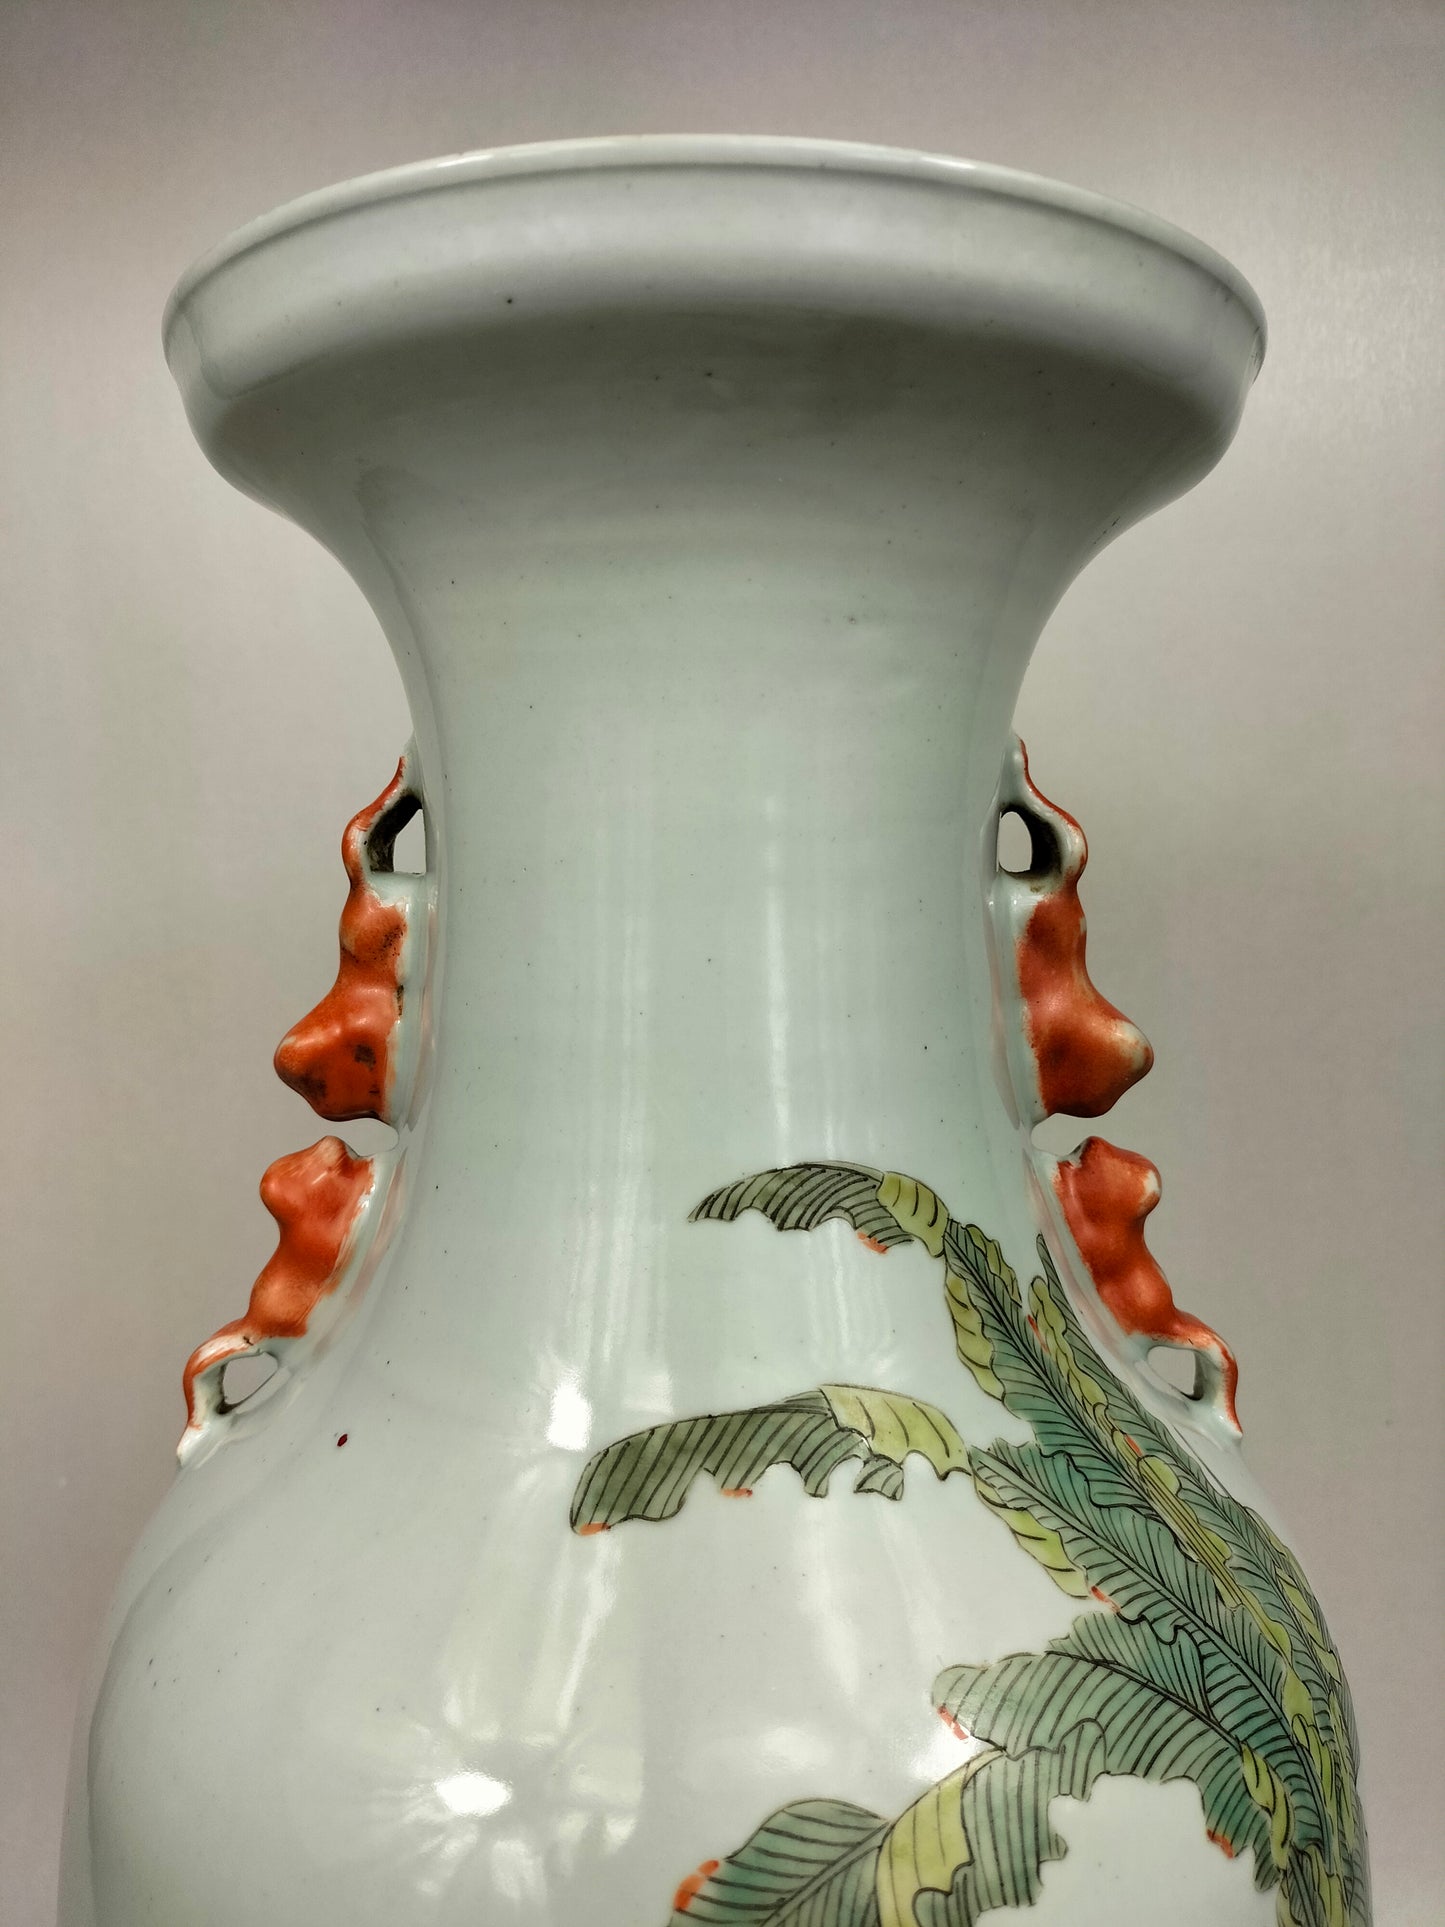 Grande vaso chinês policromado decorado com cena de jardim // século XX